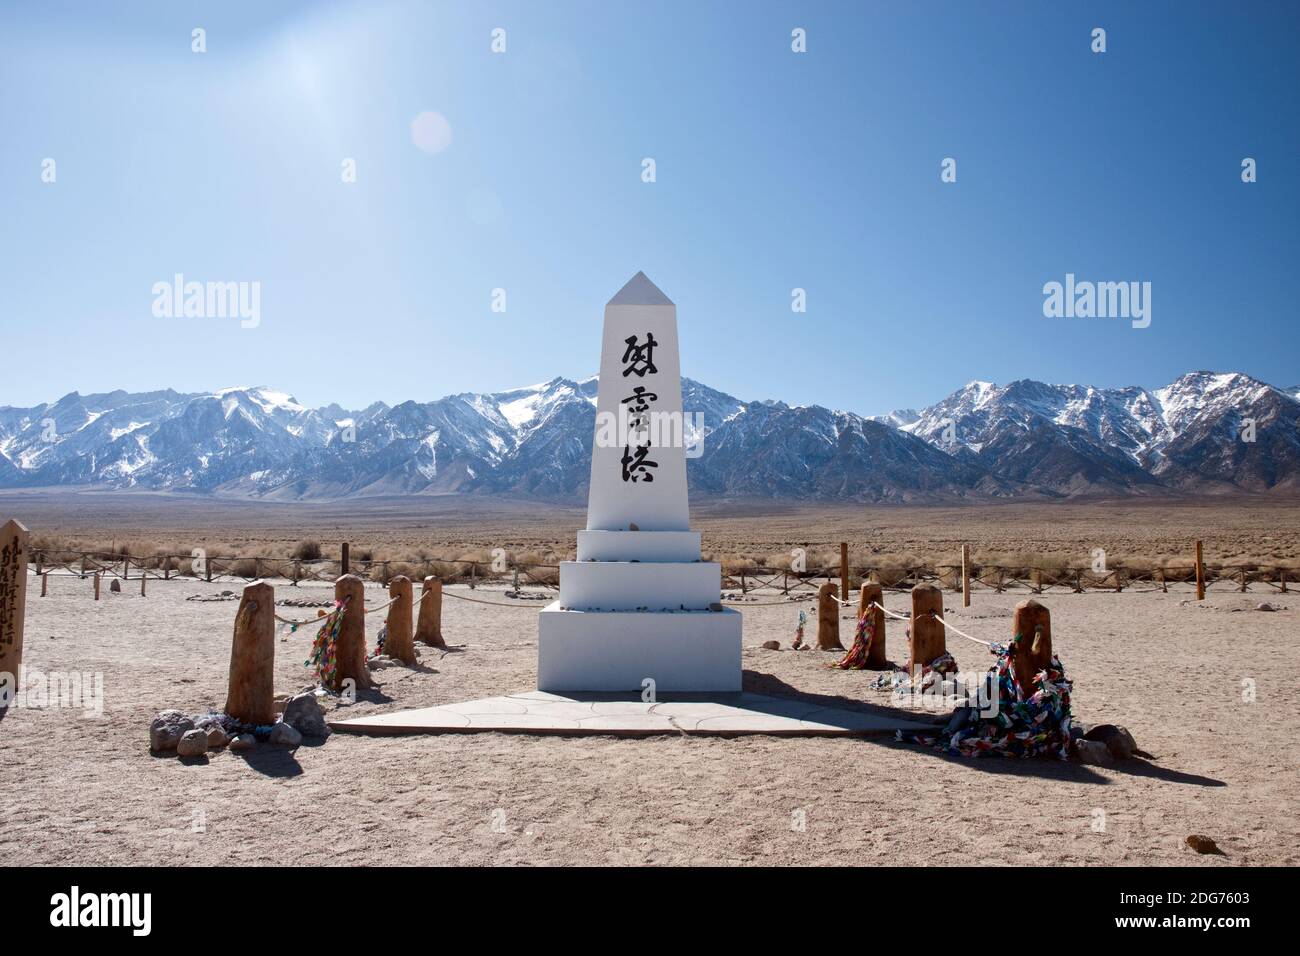 Cimetière Monument à Manzanar NAT. Site historique, un camp d'internement où les Américains japonais ont été emprisonnés pendant la Seconde Guerre mondiale, Californie, Etats-Unis. Banque D'Images